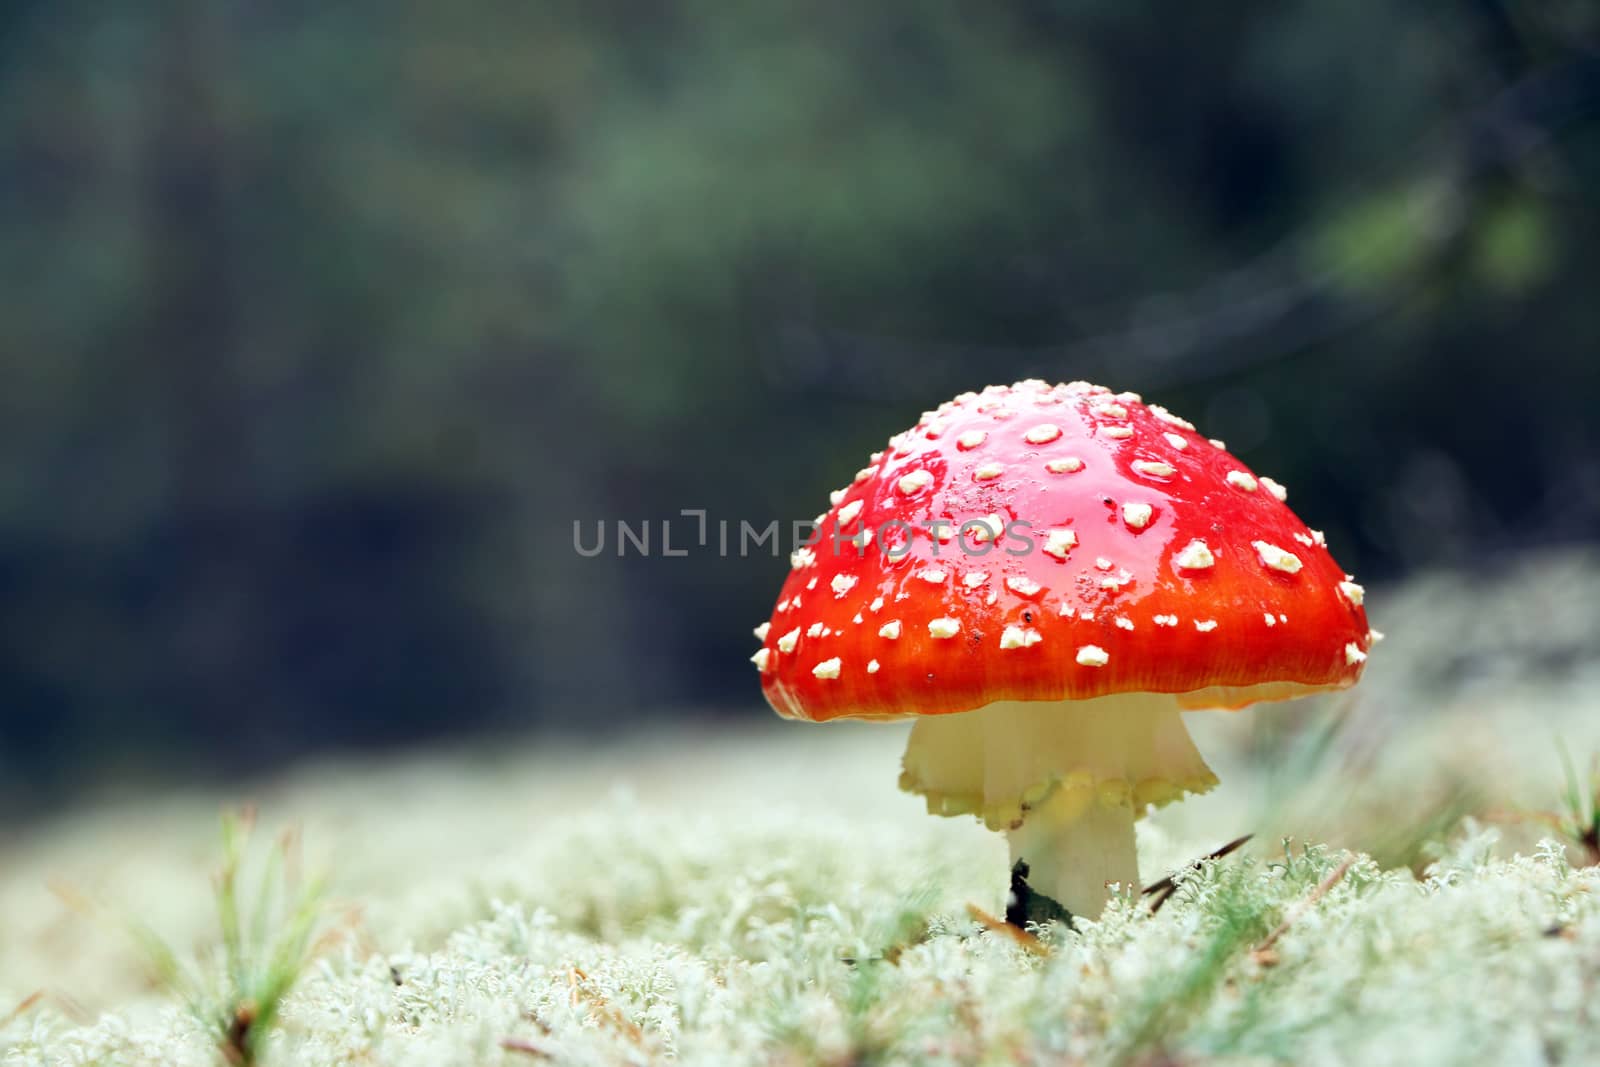 Red Amanita mushroom in wood by romvo